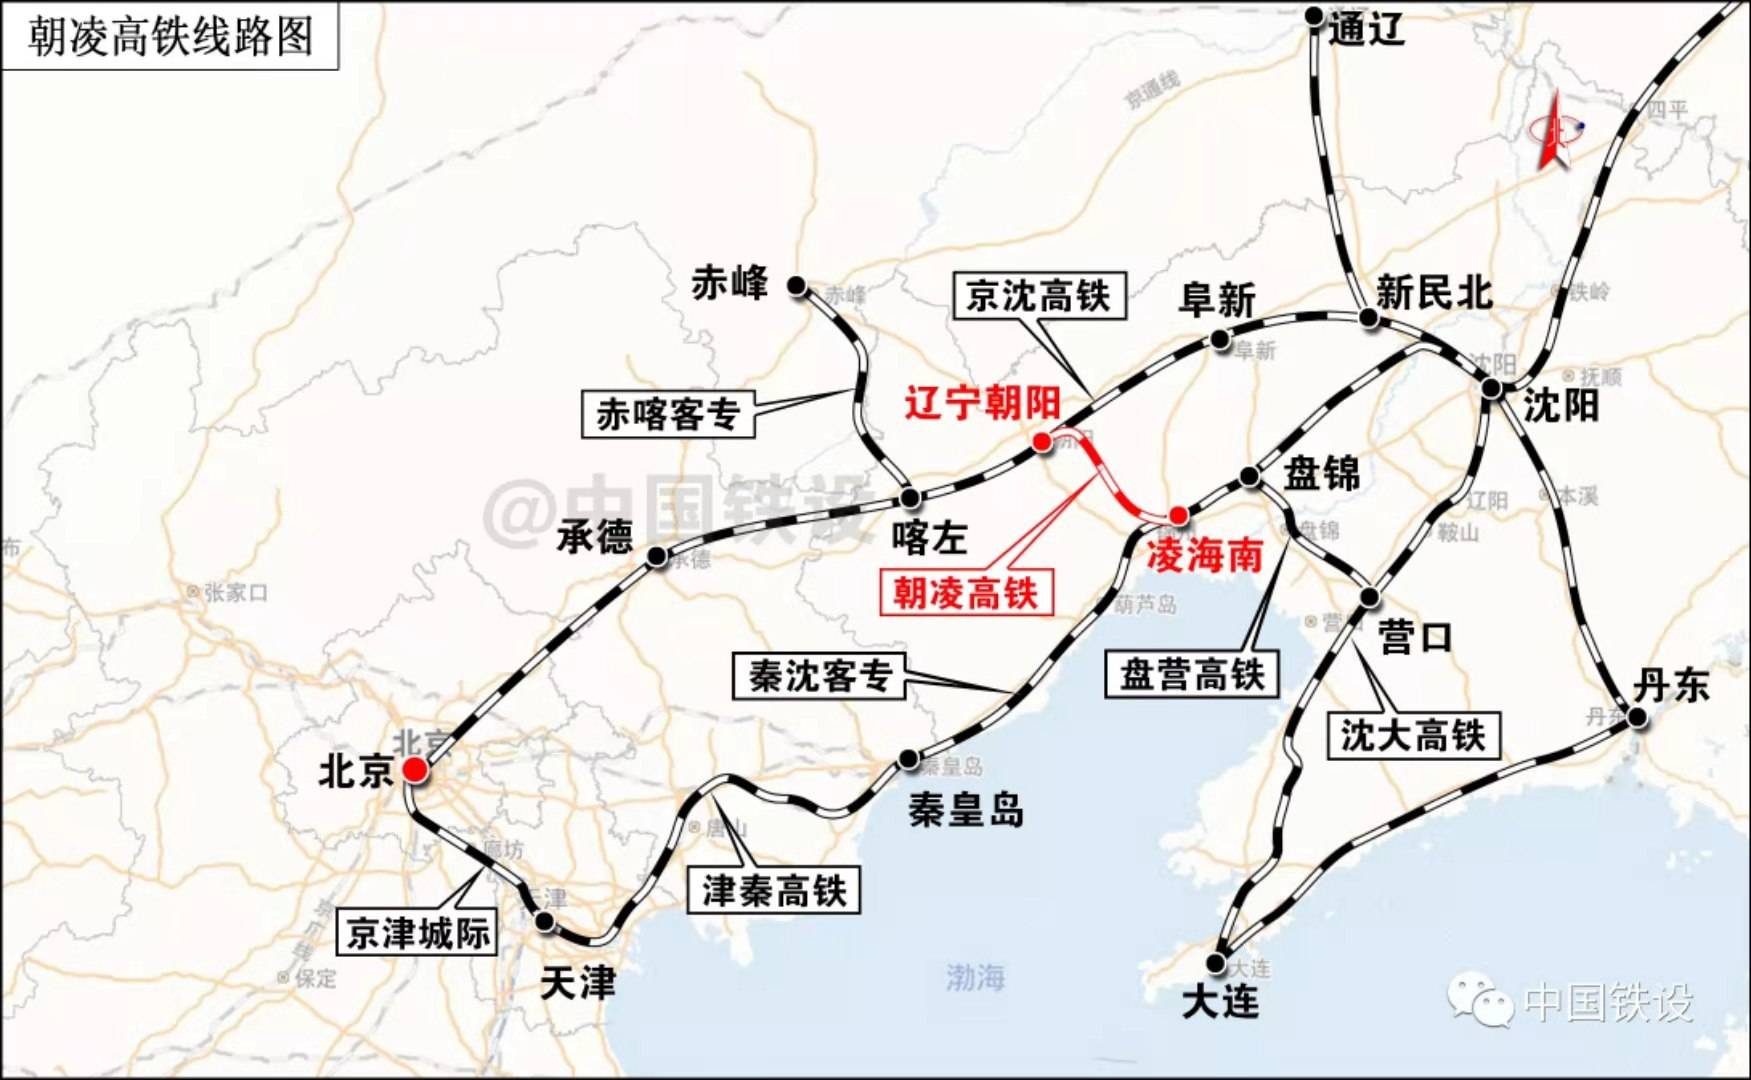 针对分管朝凌高铁凌海南站的特点,锦州南车站派出所党支部合理部署